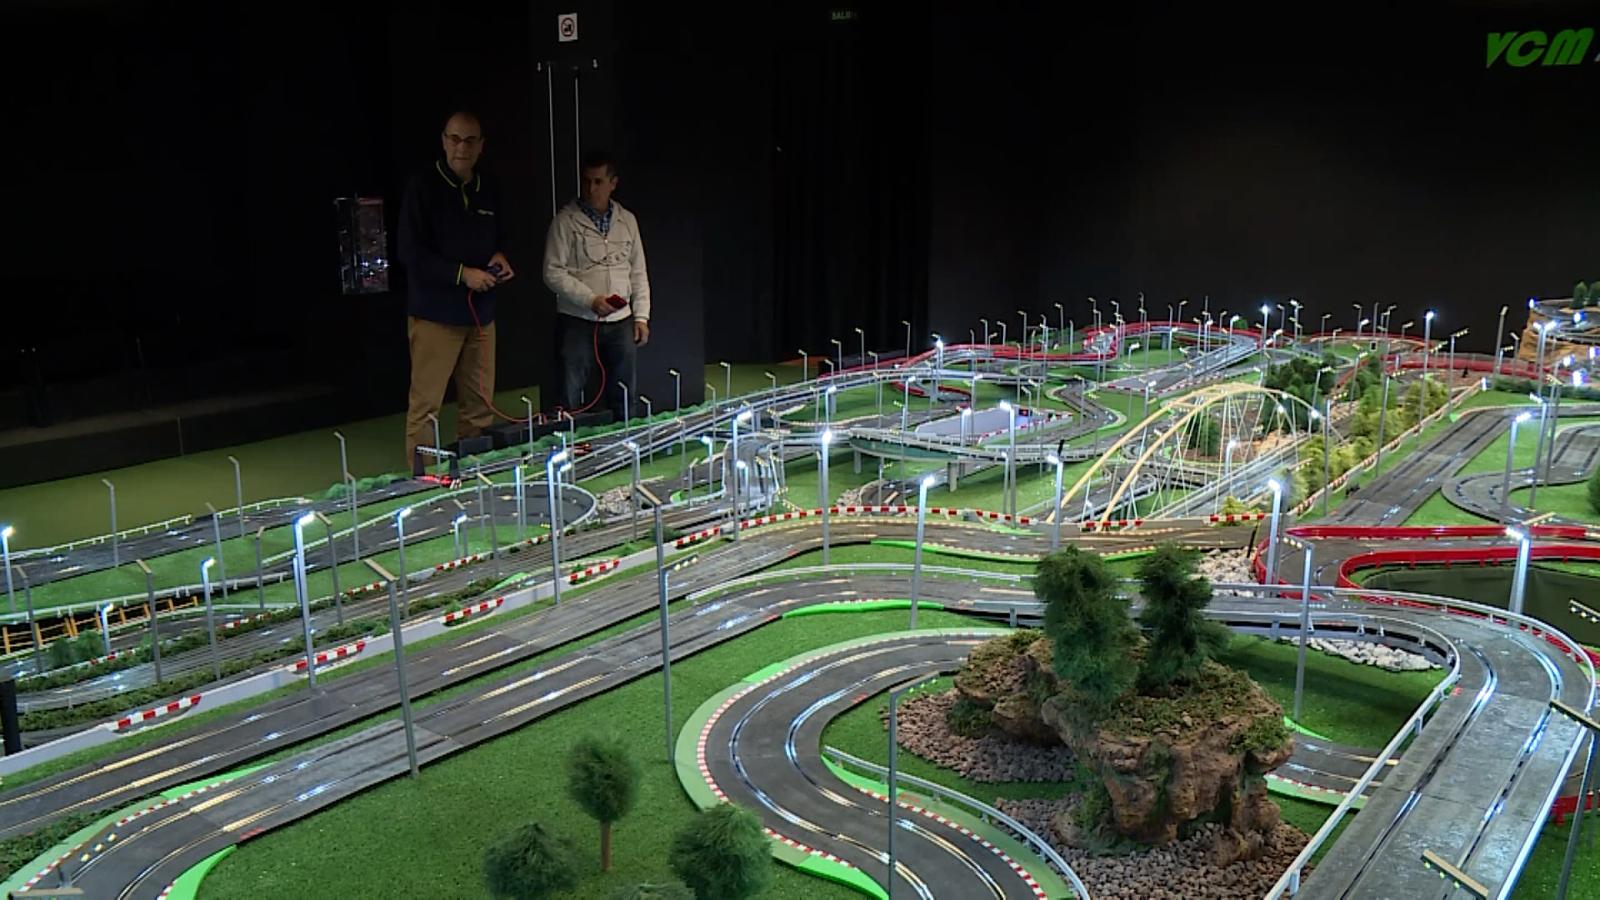 Neuropatía genio Civil Conoce esta enorme pista de carreras de 227 metros para autos de juguete |  Video